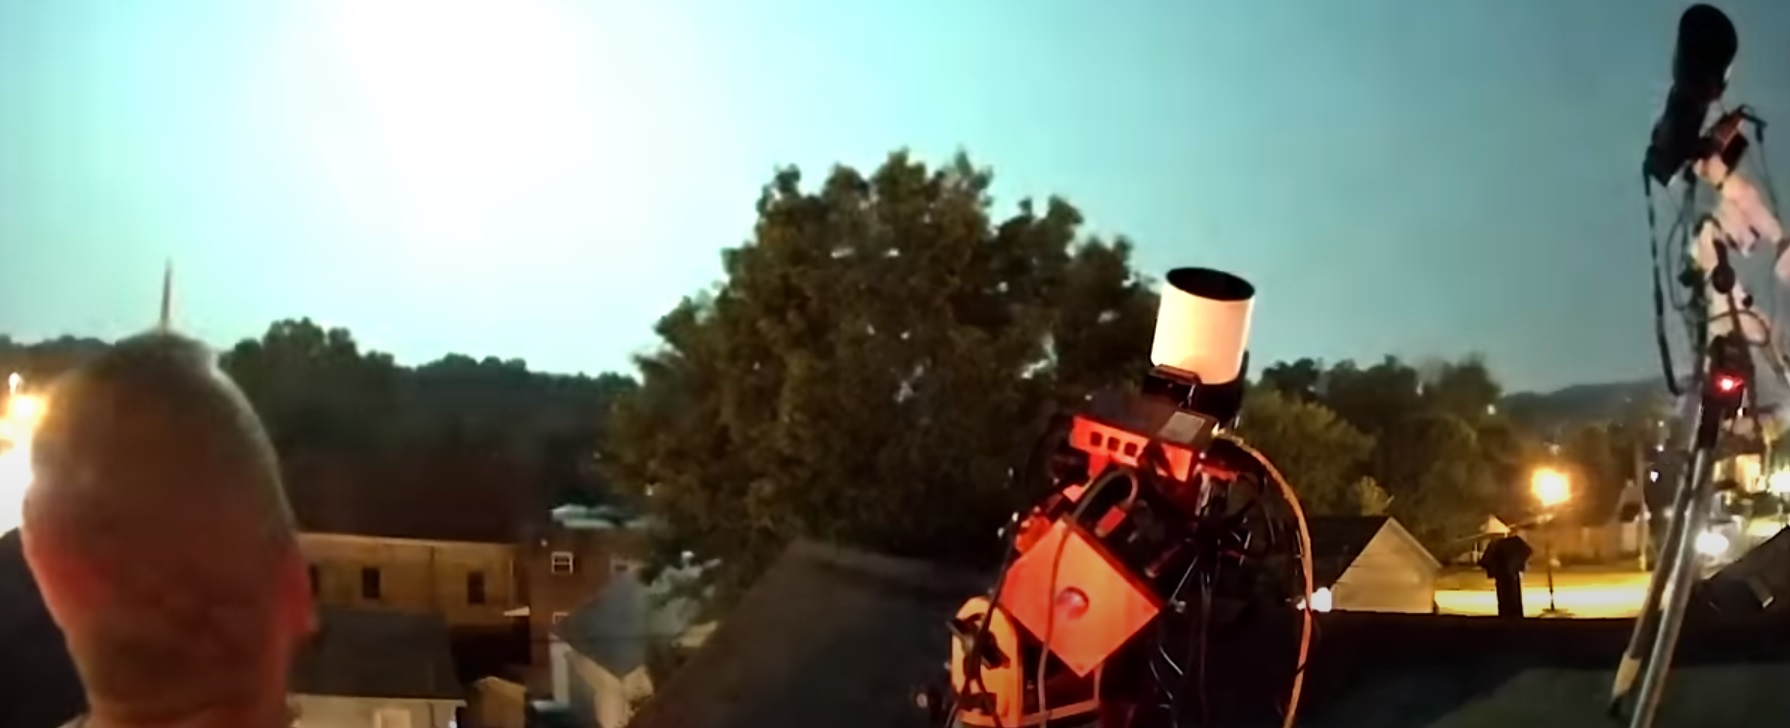 Meteora esplode ‘accanto’ alla superluna negli Stati Uniti. Il video